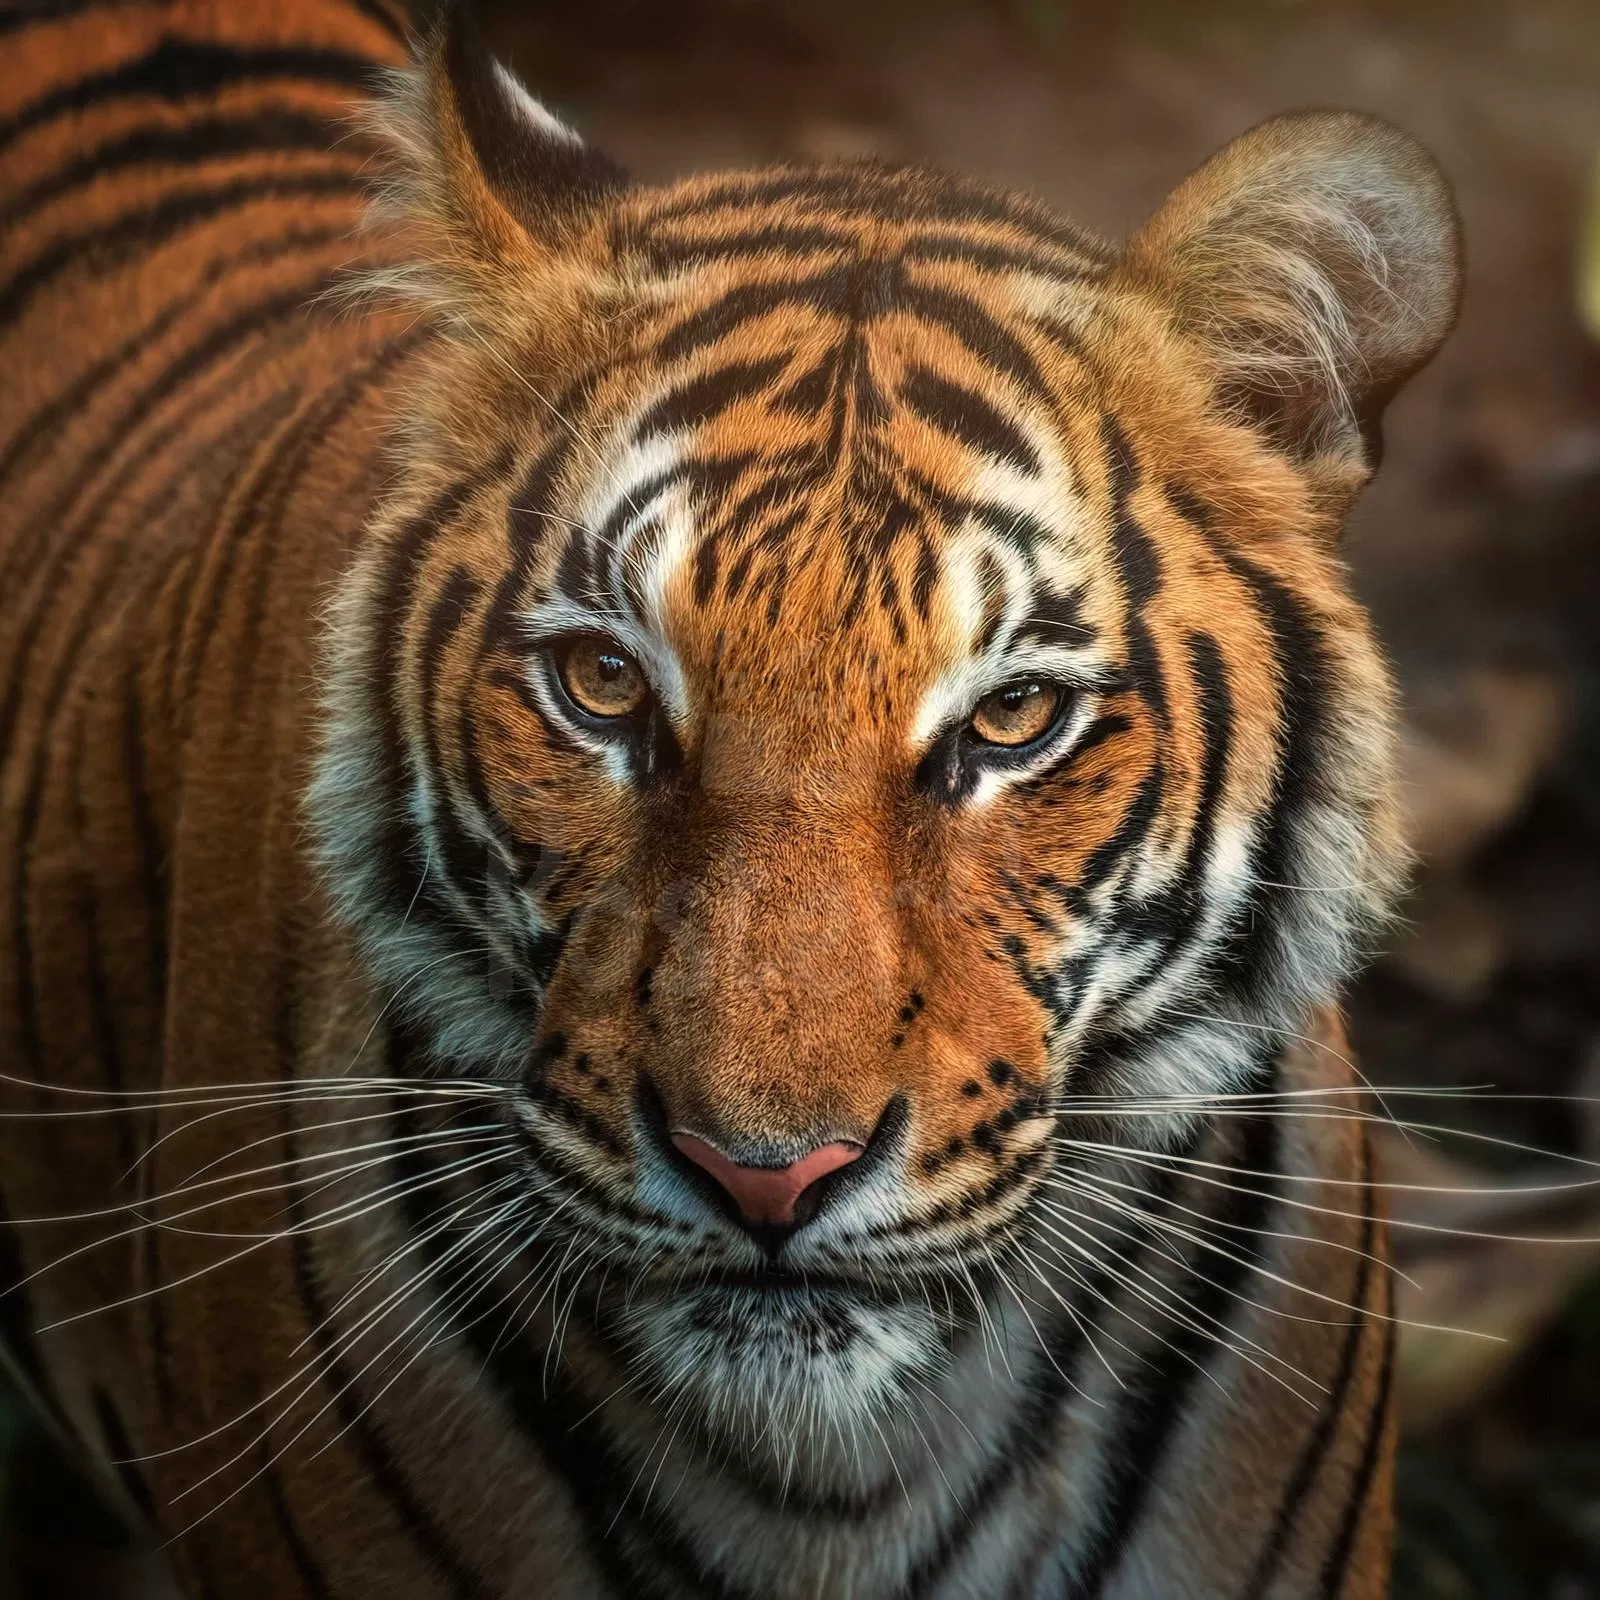 Tiger Poster4u.gr